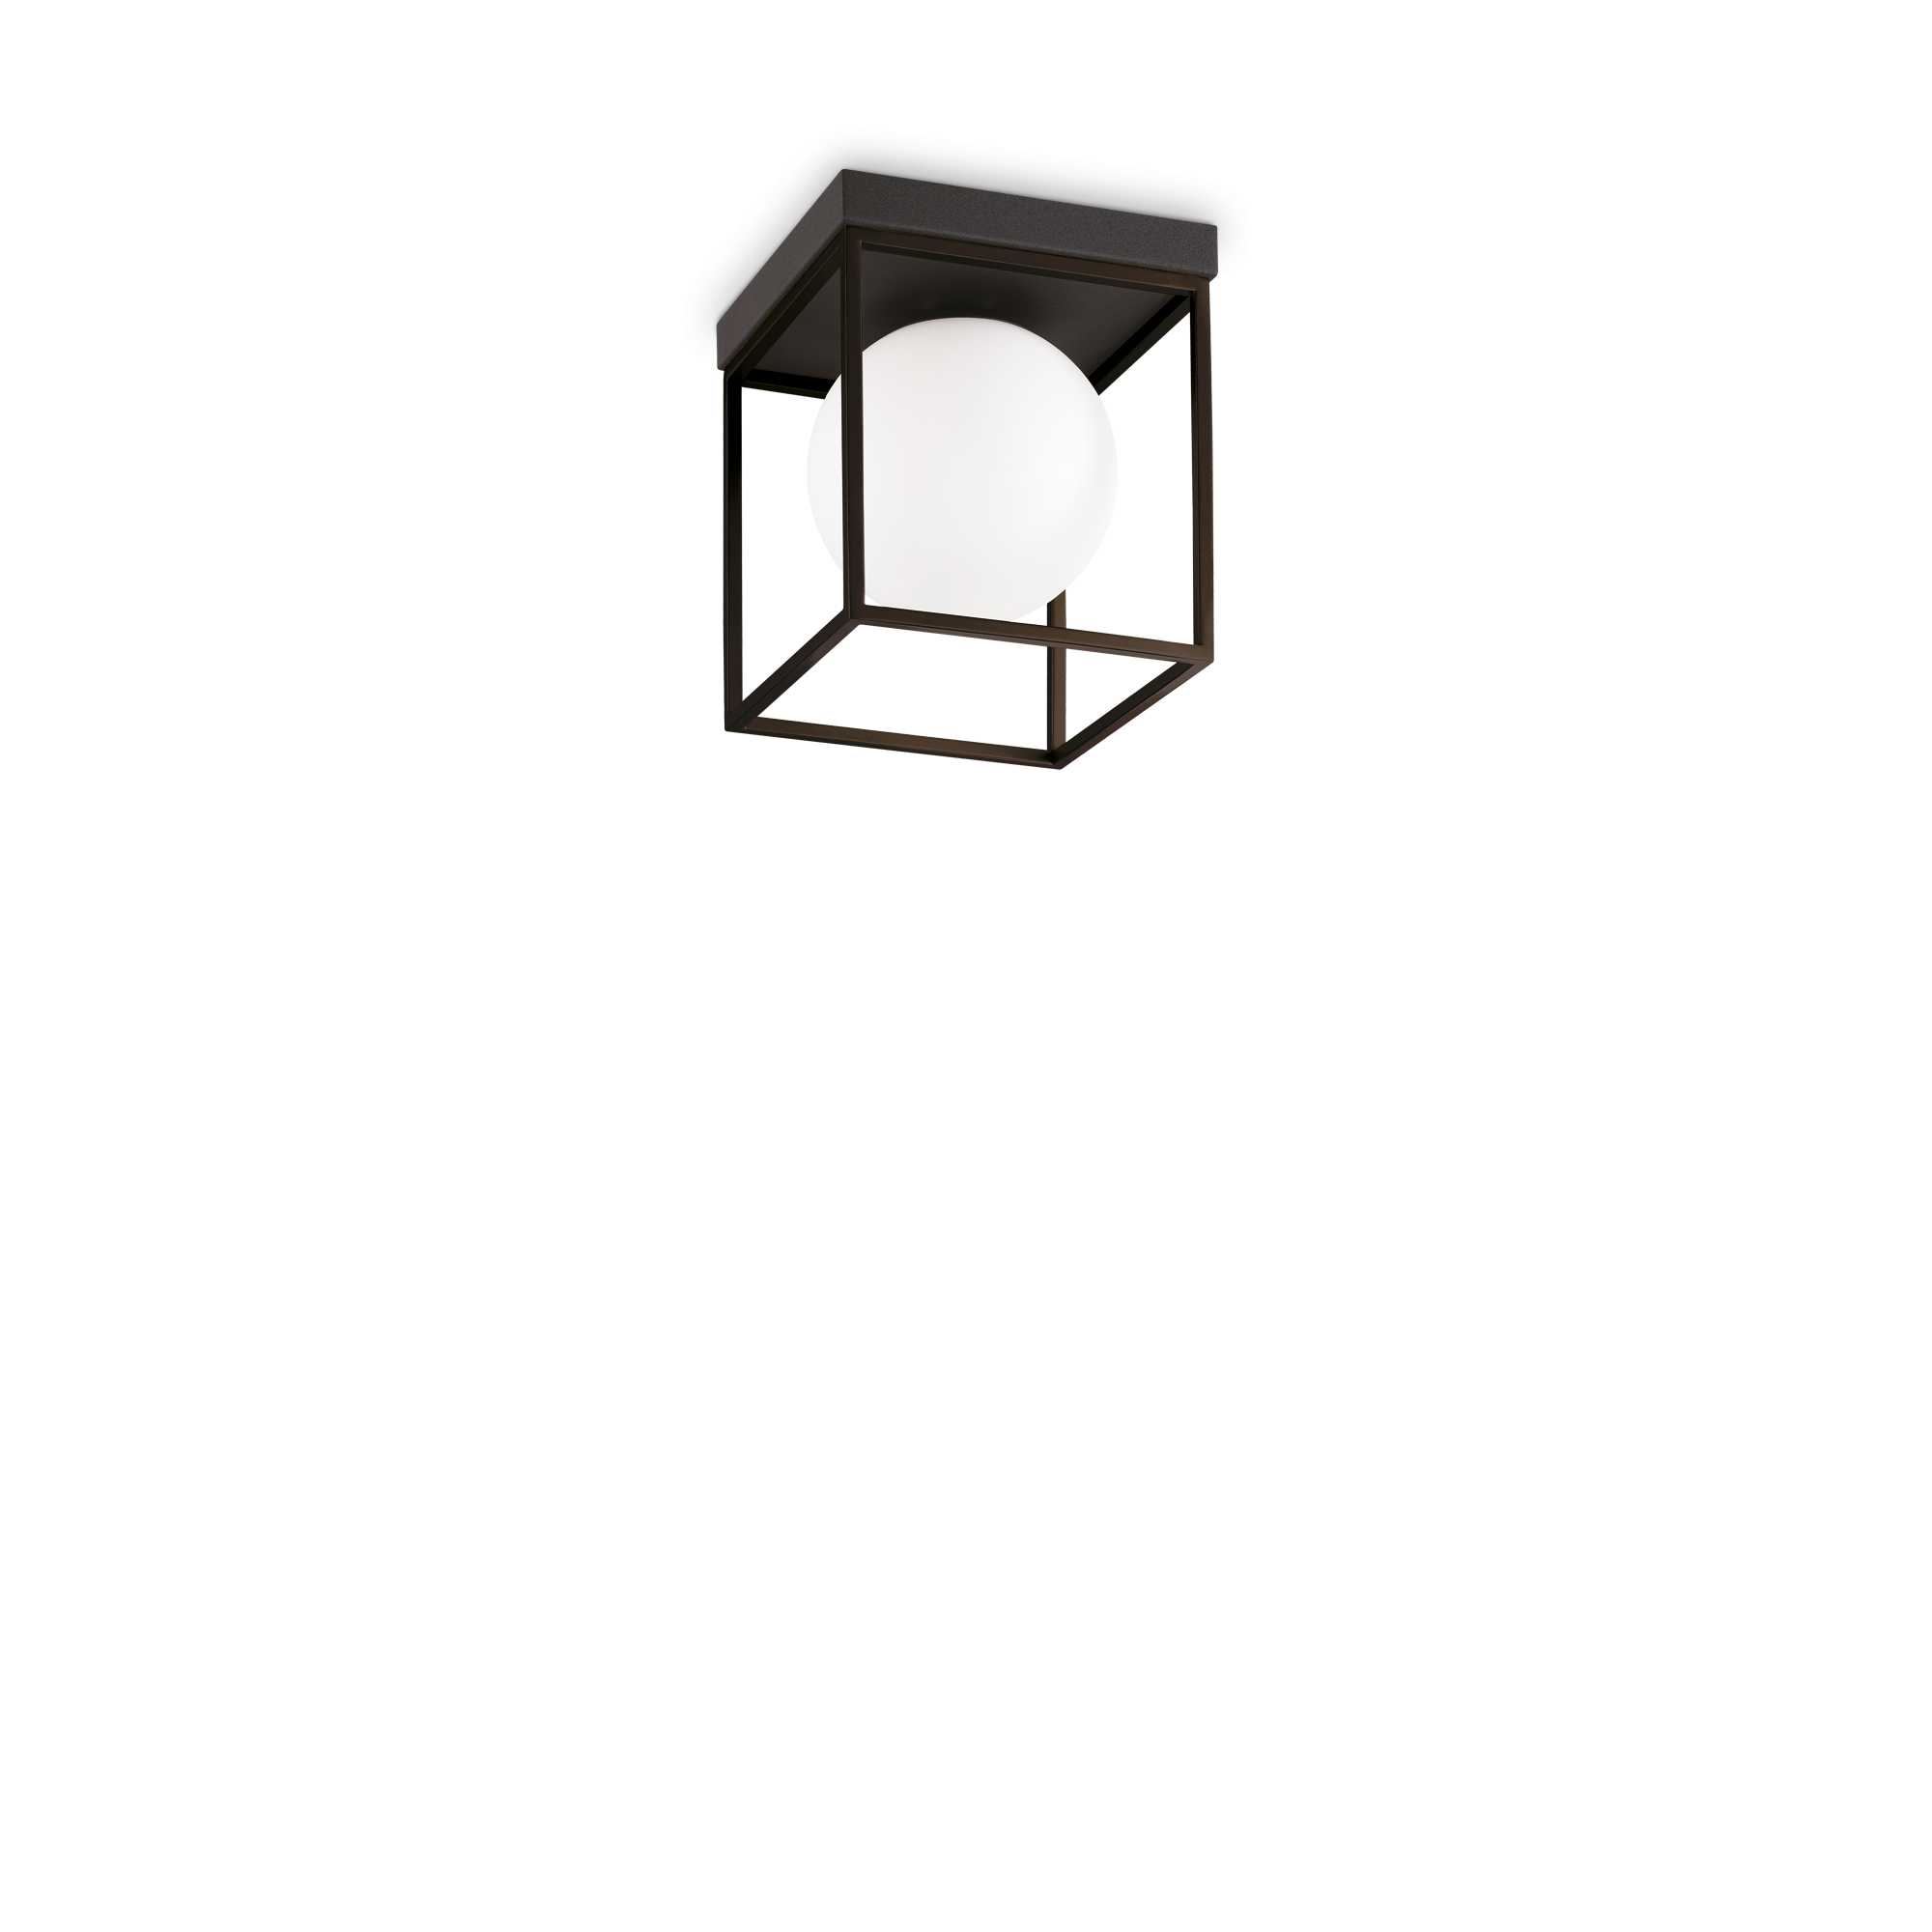 AD hotelska oprema Stropne lampe Lingotto- Crna boja slika proizvoda